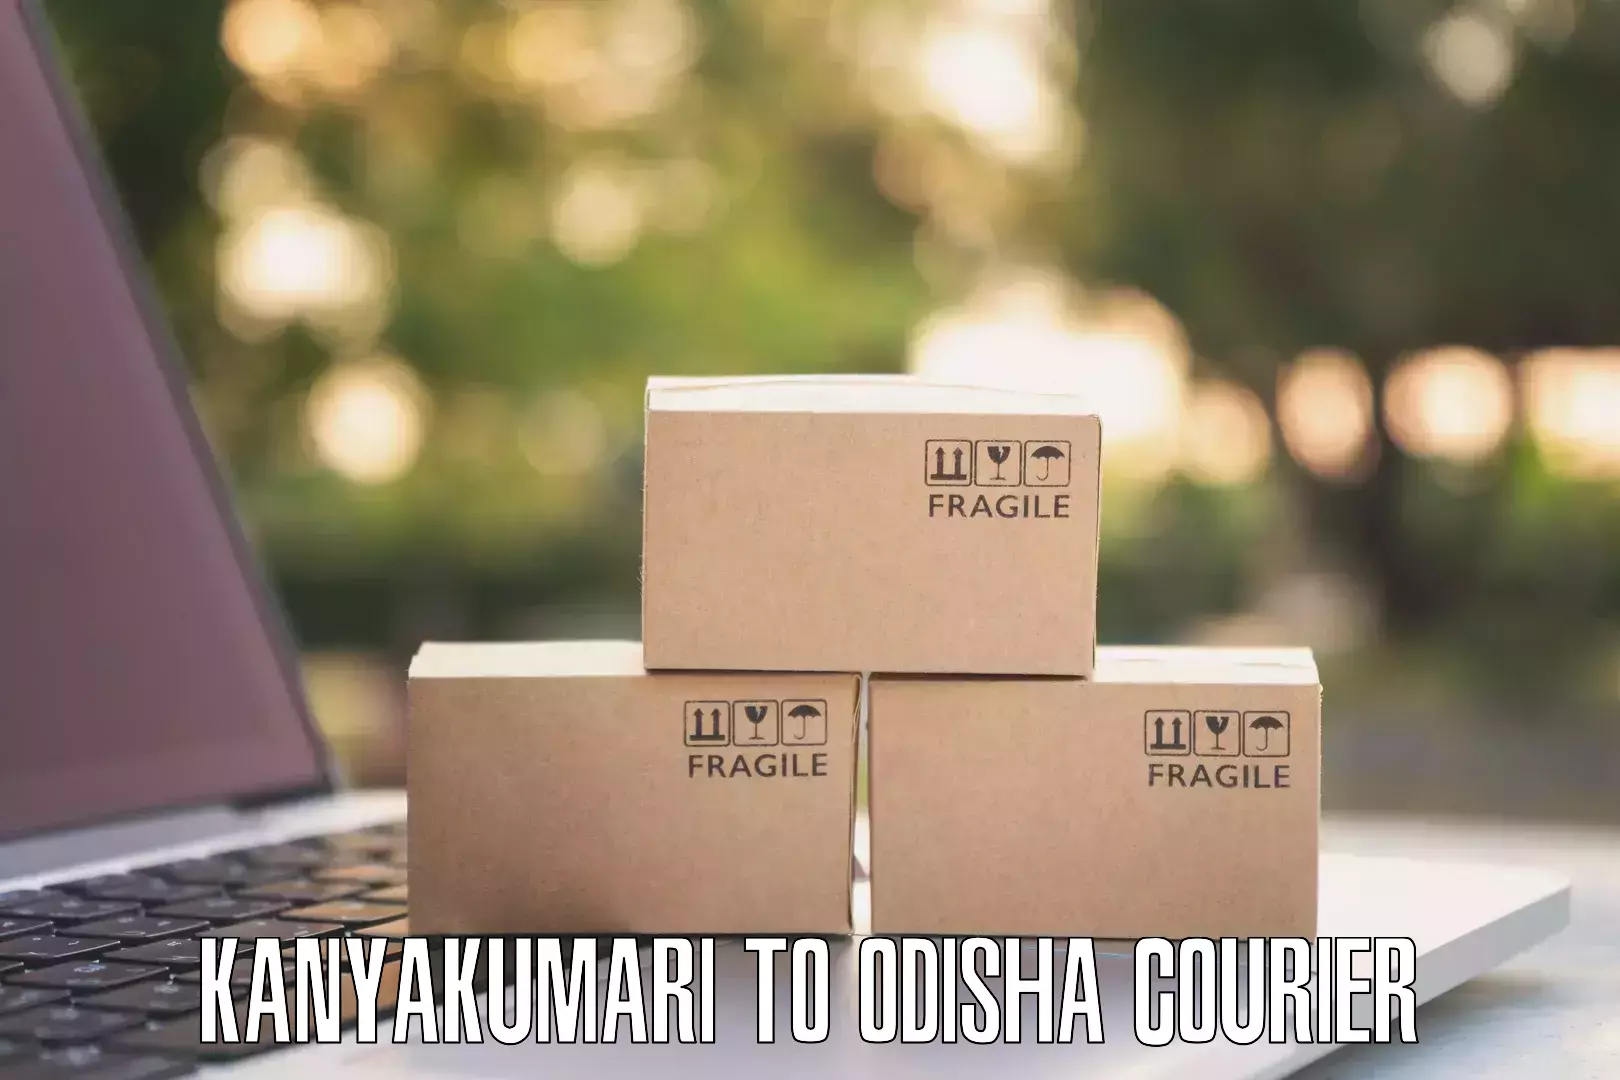 Efficient package consolidation Kanyakumari to Odisha